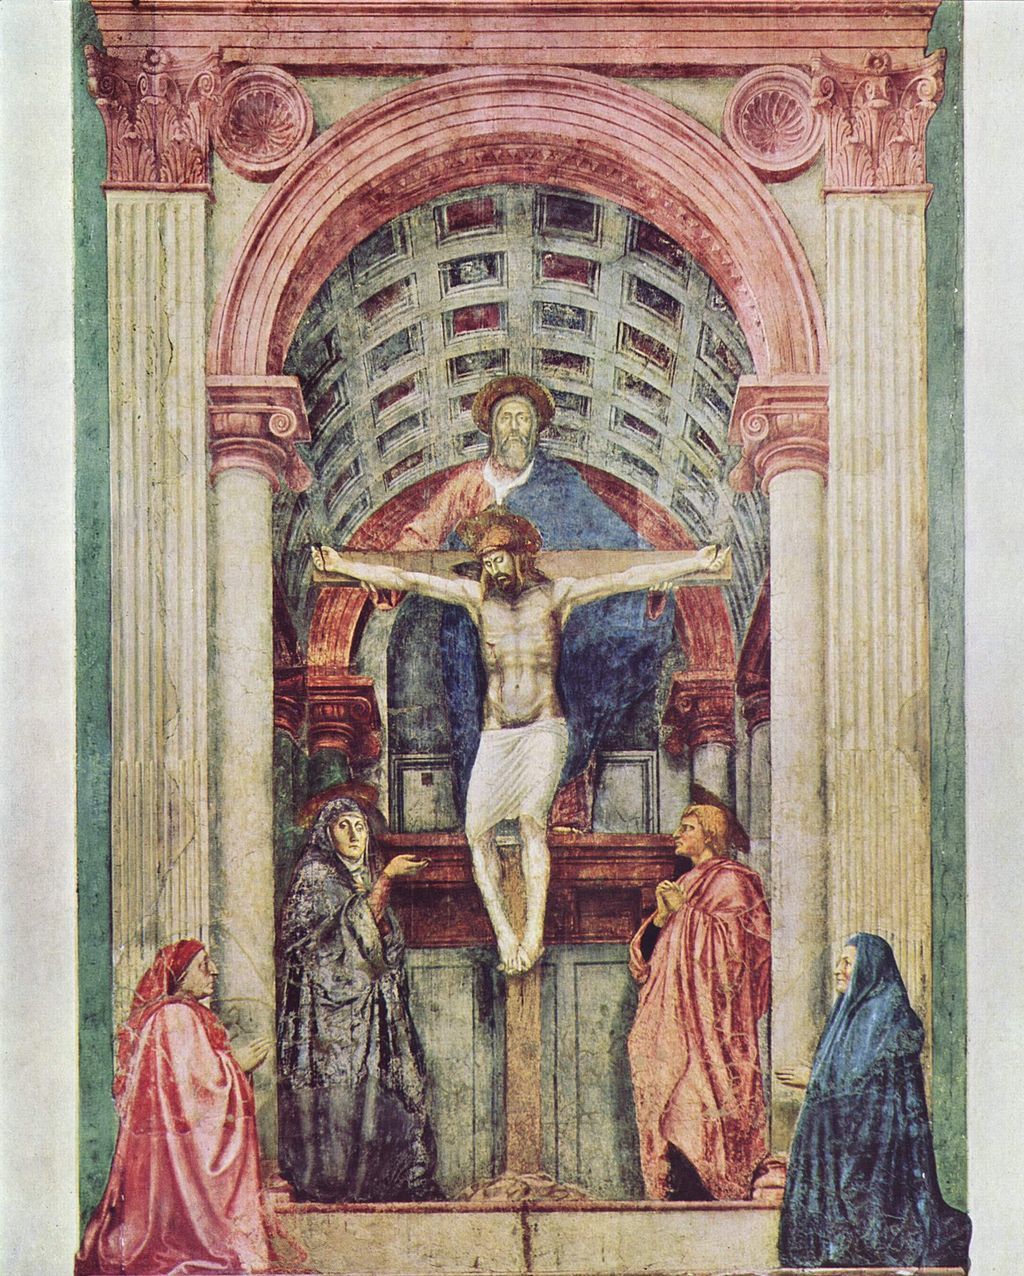 이탈리아 화가 마사초가 1427년경 피렌체의 산타 마리아 노벨라 성당에 그린 ‘성삼위일체’. 7.6m 높이의 이 작품은 원근법을 최초로 적용한 서양화로 꼽힌다. 사진 출처 위키미디어